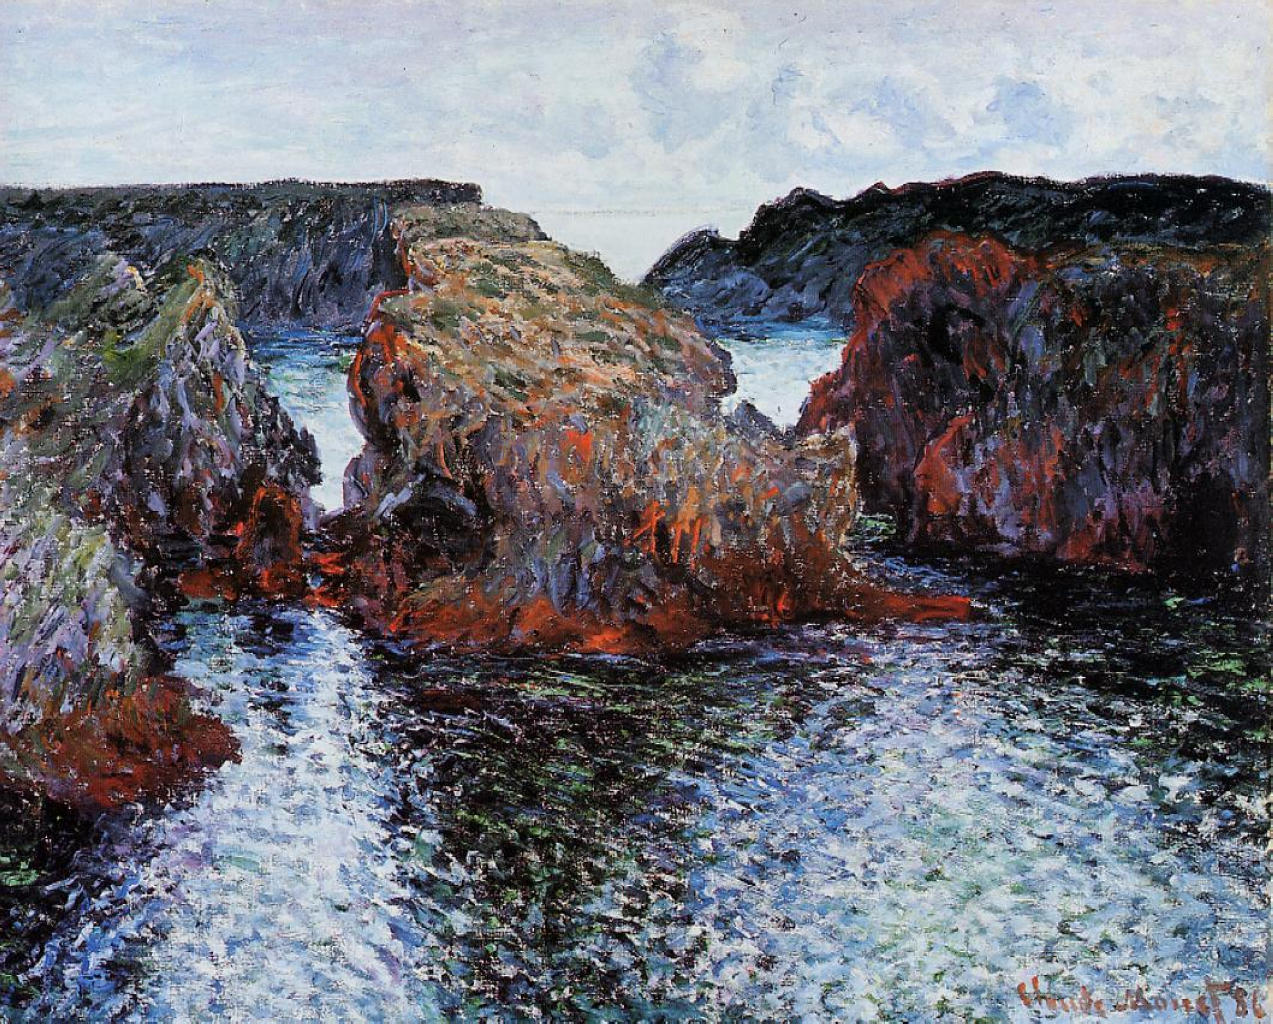 《贝勒岛的古尔法尔港的岩石》克洛德·莫奈画作介绍及画作含义/创作背景